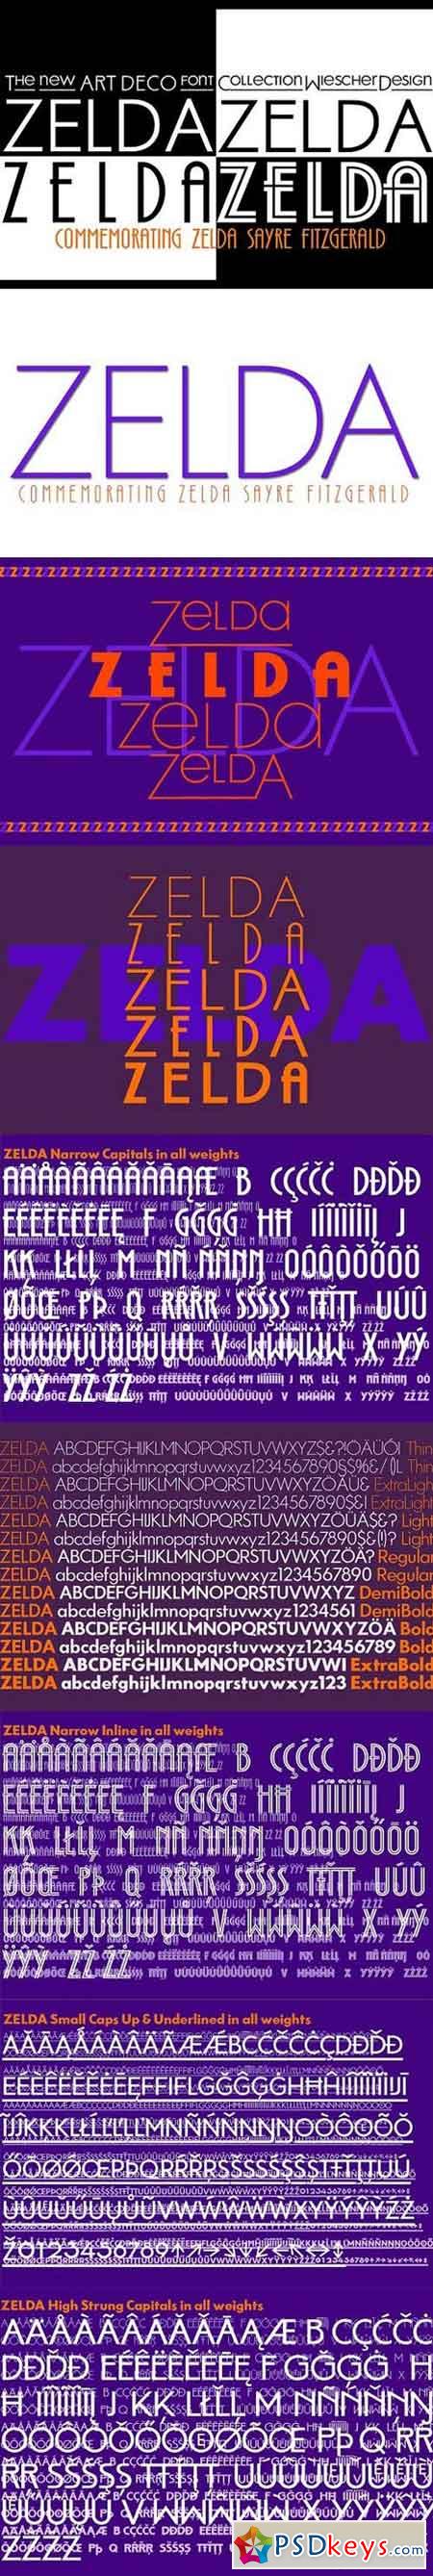 Zelda Collection 1593849